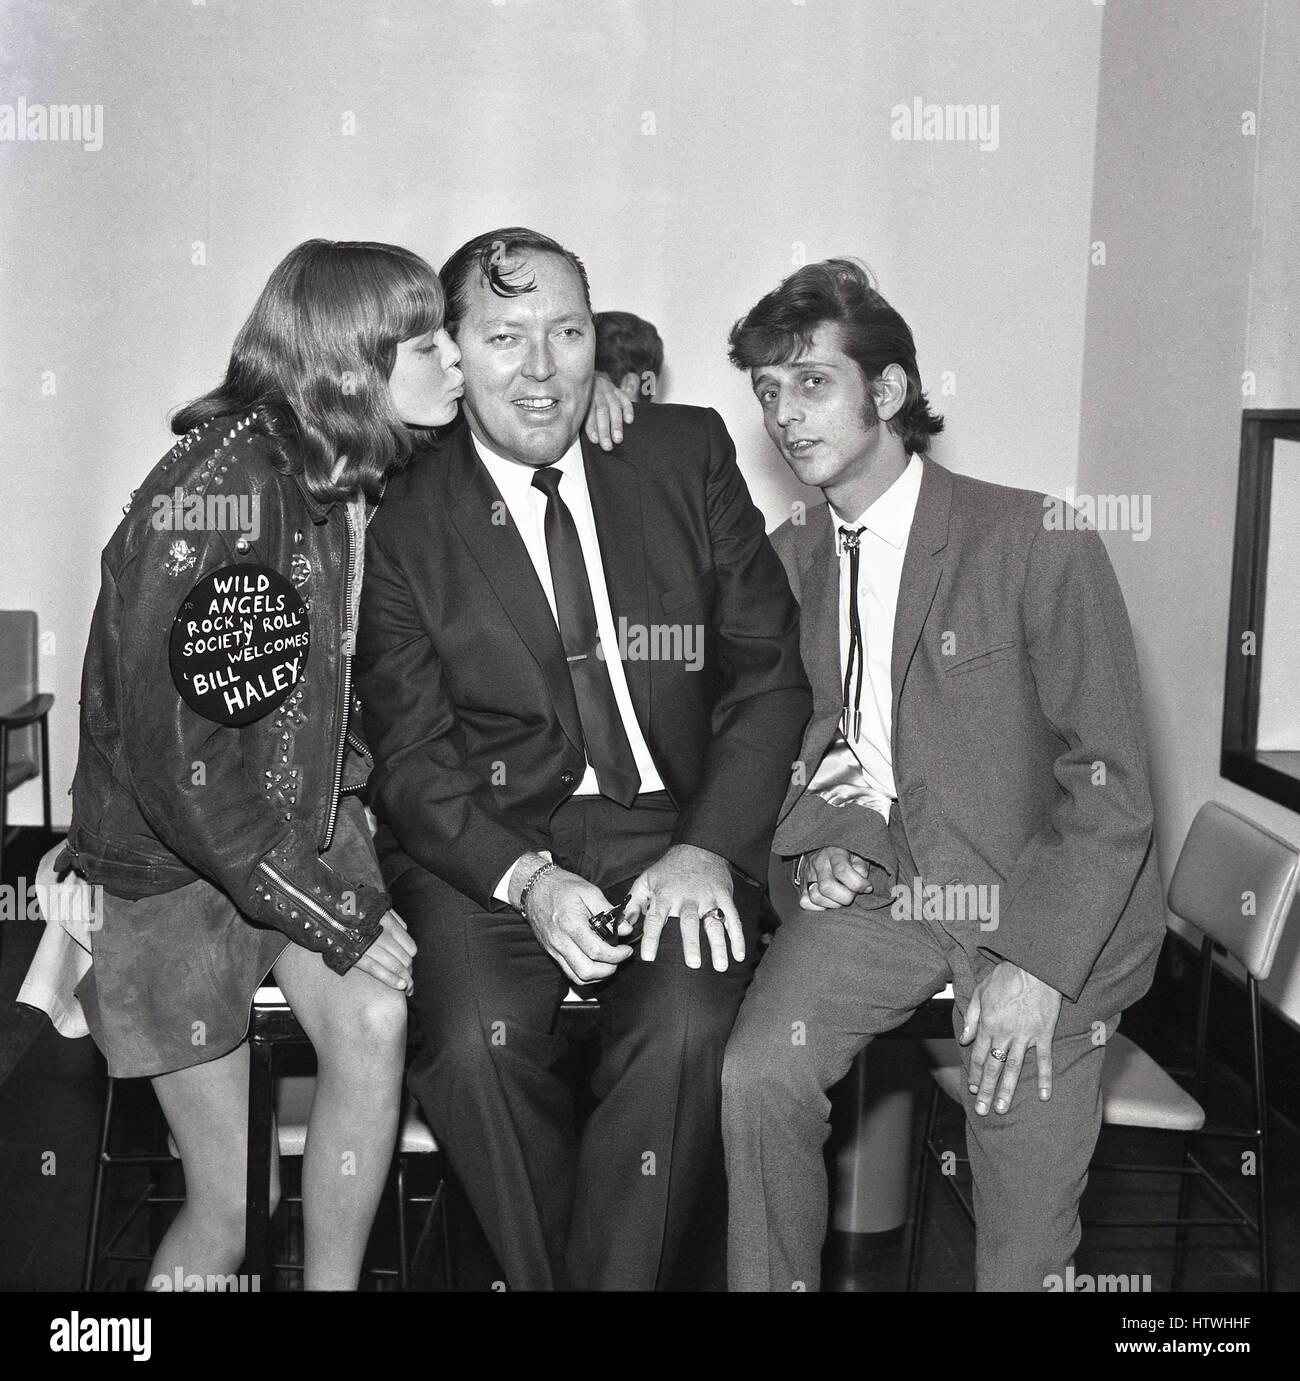 1968, storico, American rock and roll singer Bill Haley con una giovane femmina la ventola dell'angeli selvaggi e mal grigio, Londra, Inghilterra Foto Stock